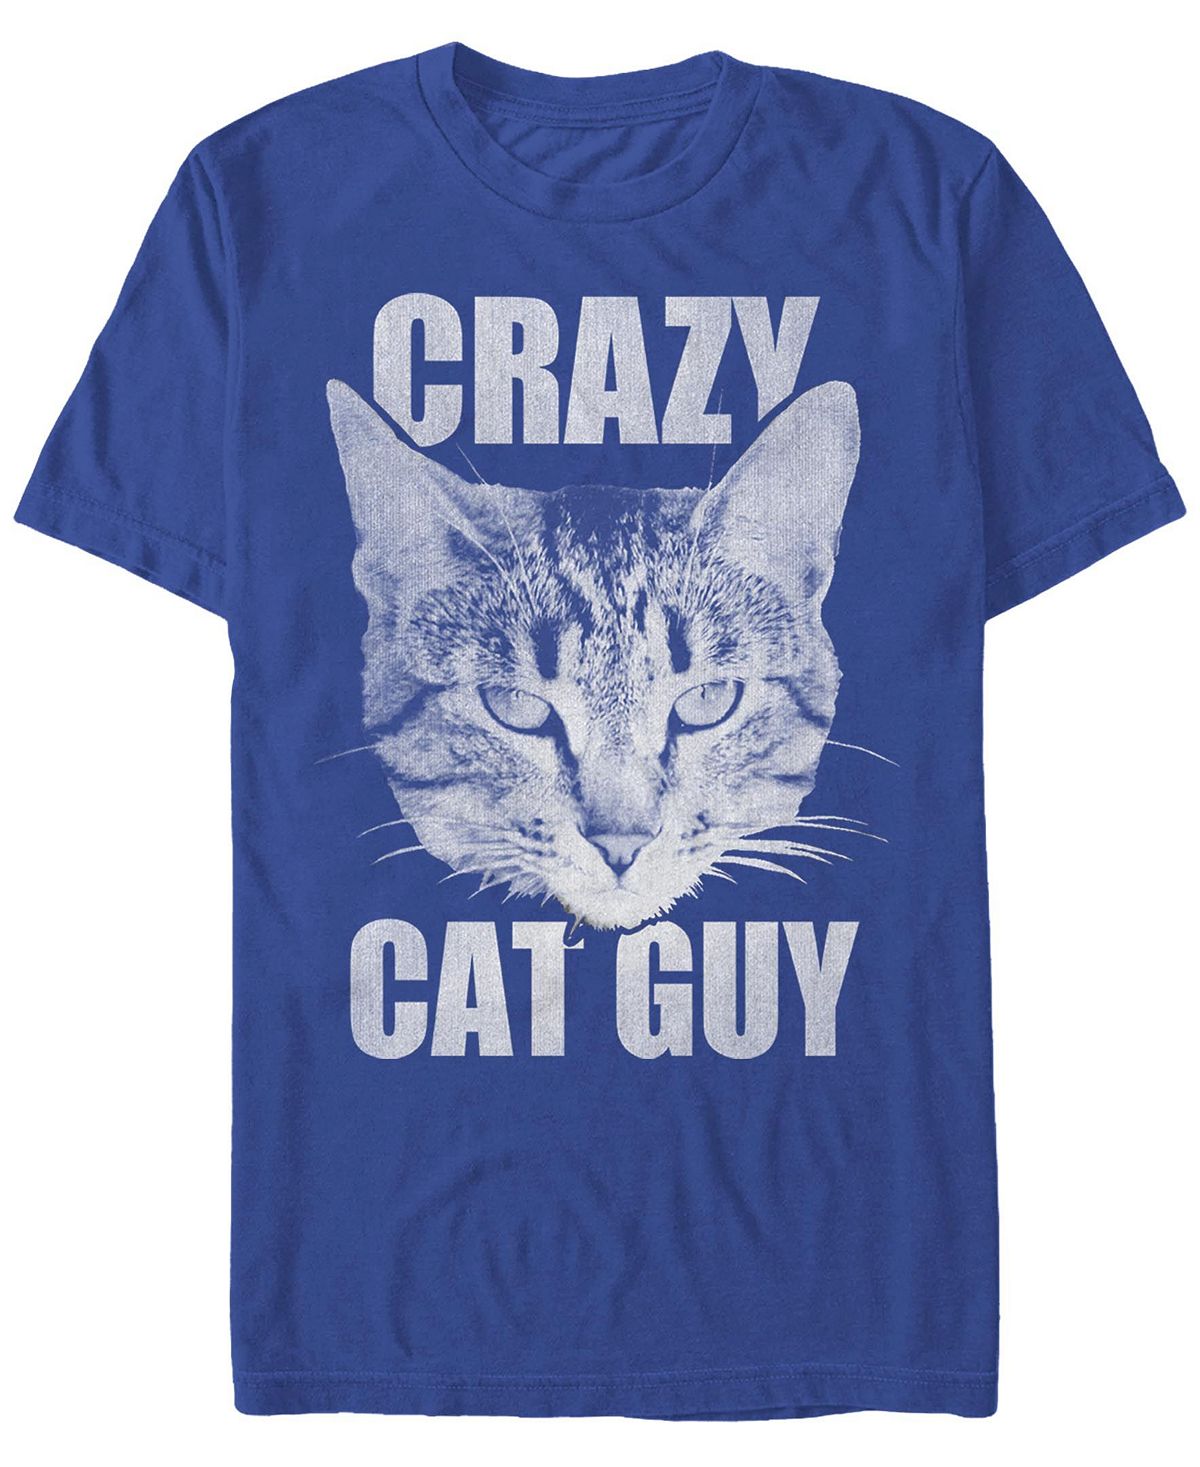 Мужская футболка с круглым вырезом и короткими рукавами cat guy Fifth Sun